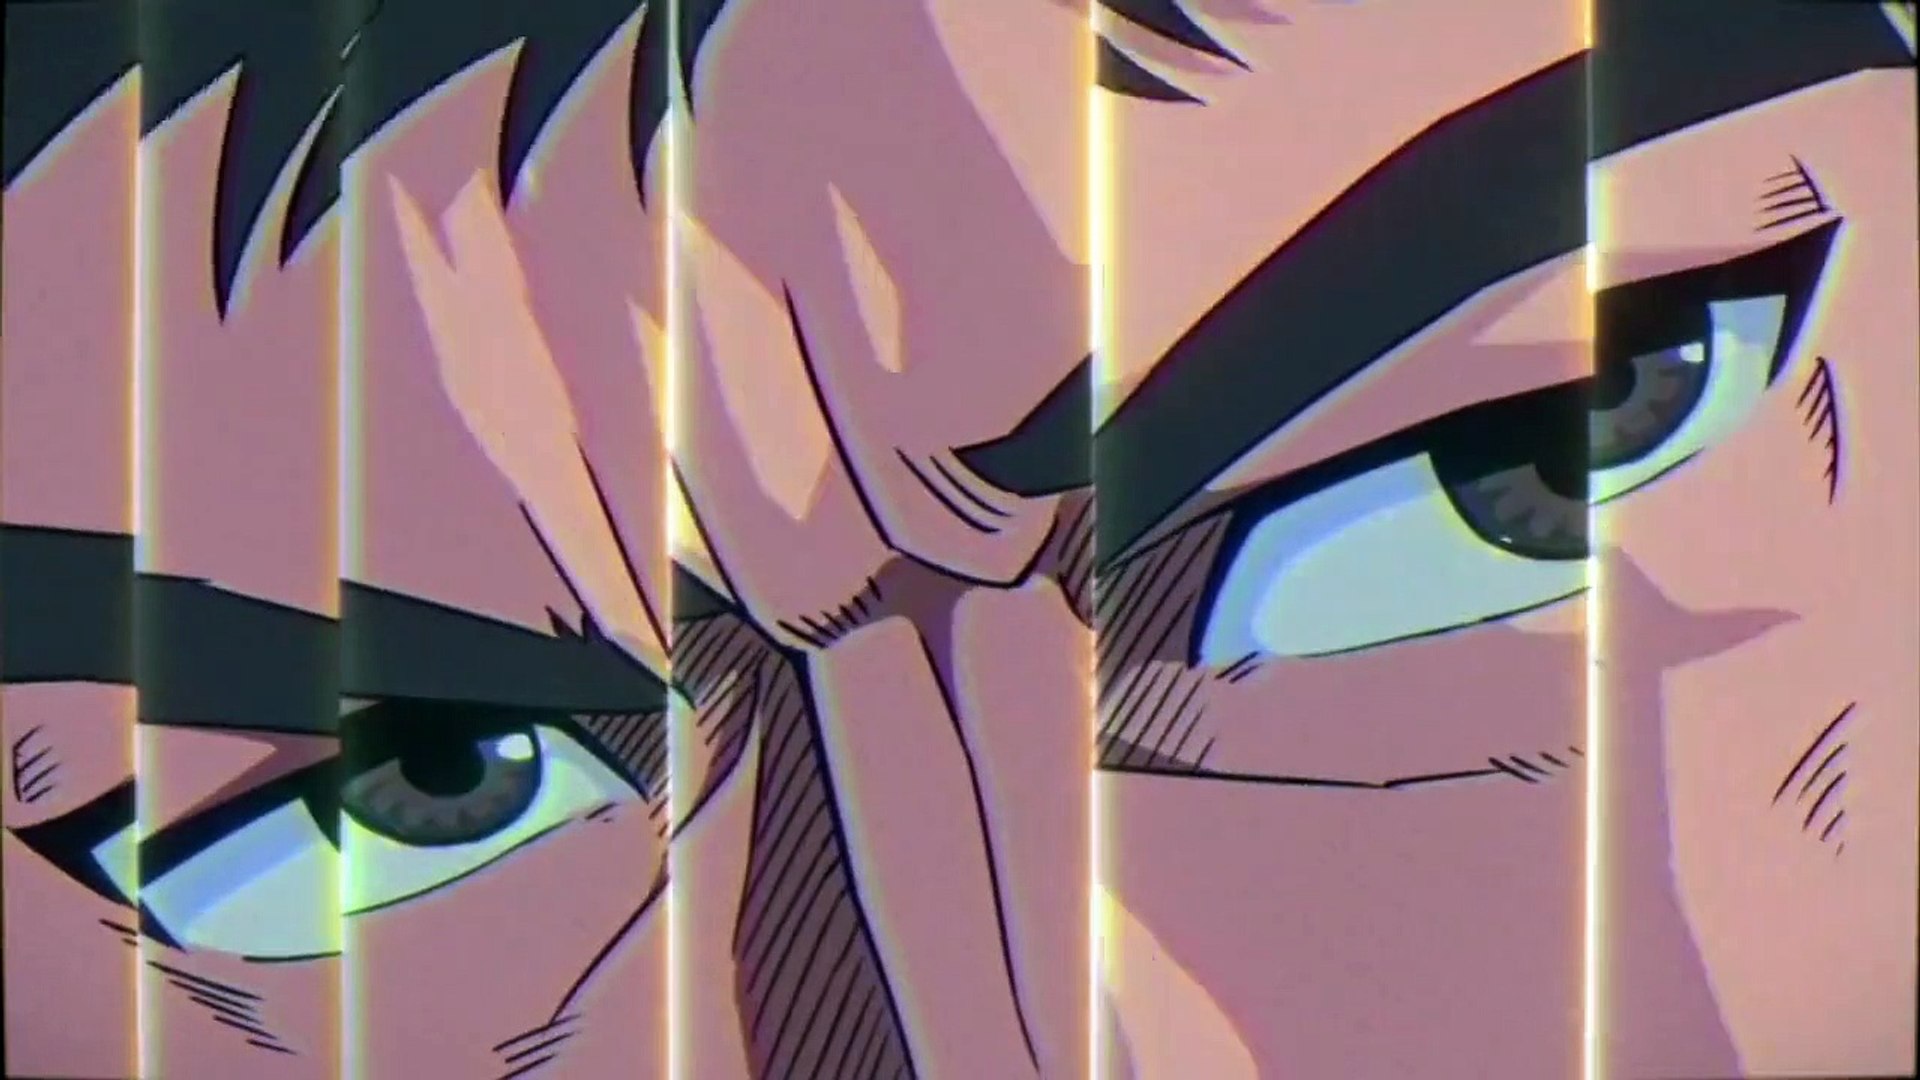 Série de anime de Bruce Lee é anunciada com teaser trailer